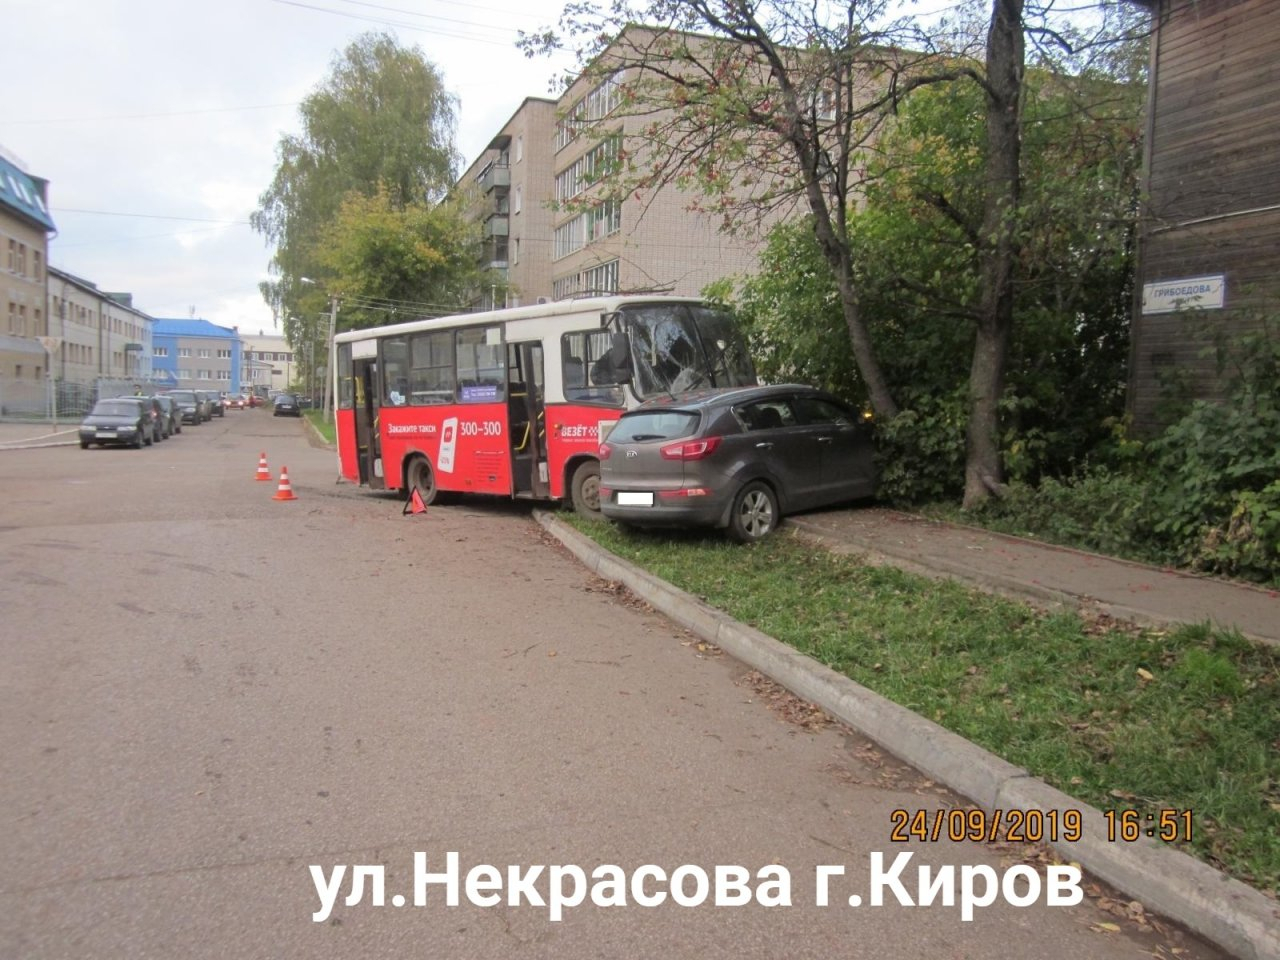 Сбил пешехода и снес иномарку в дерево: в Кирове произошло два ДТП с автобусами